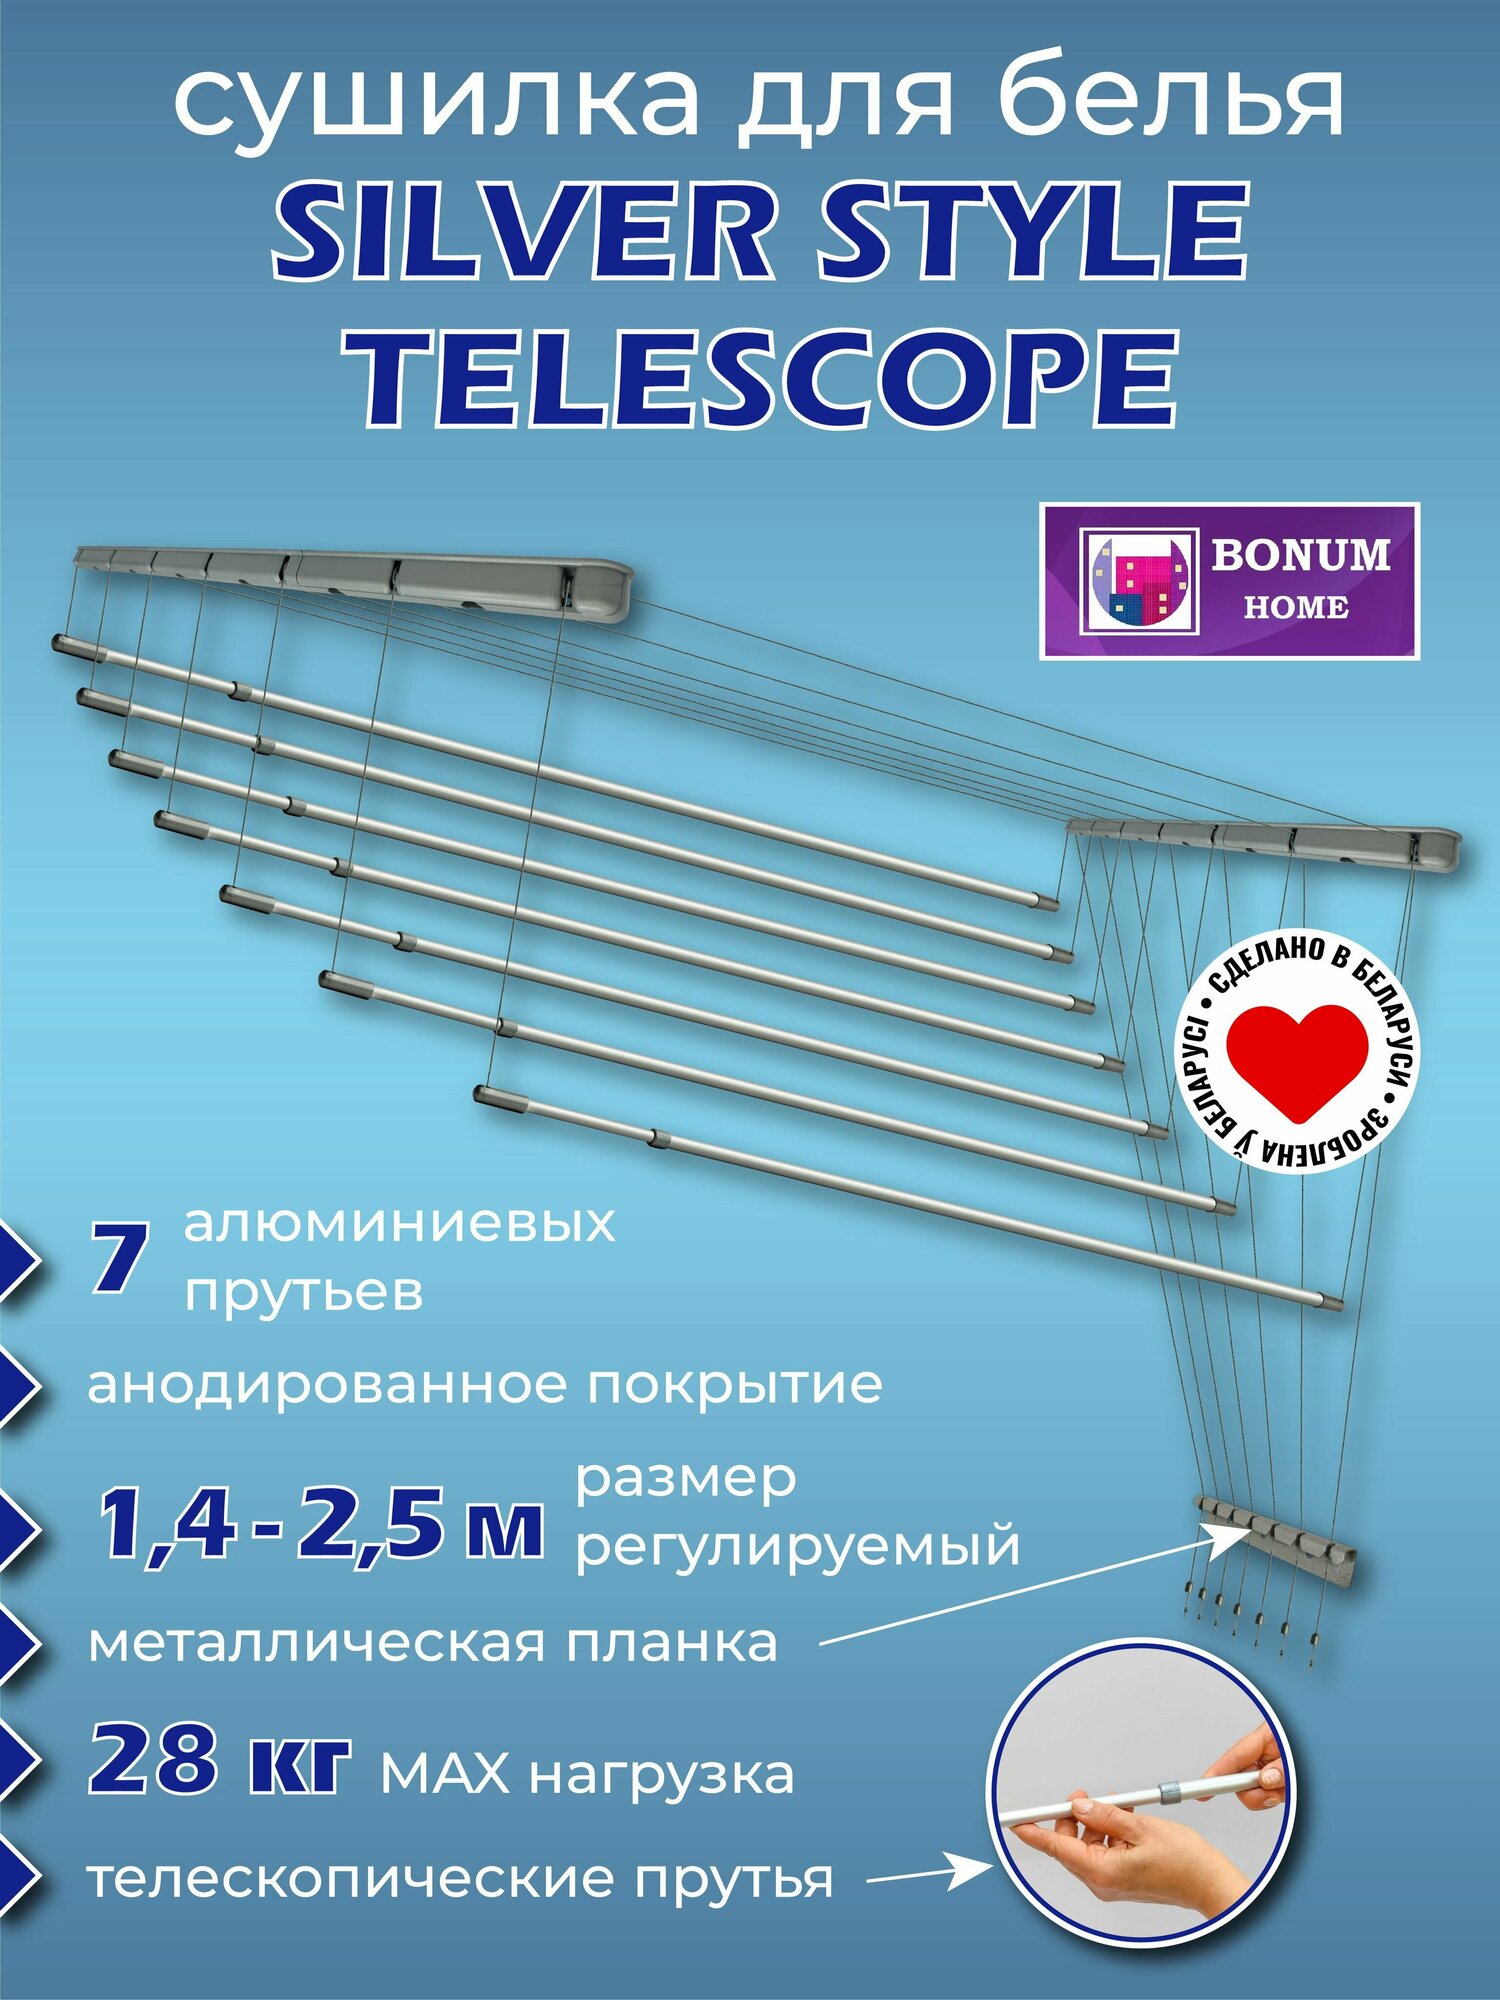 Сушилка для белья серебристая, потолочная, навесная, раздвижная, телескопическая, алюминиевая 1,4м-2,5м.7 прутьев. Беларусь.